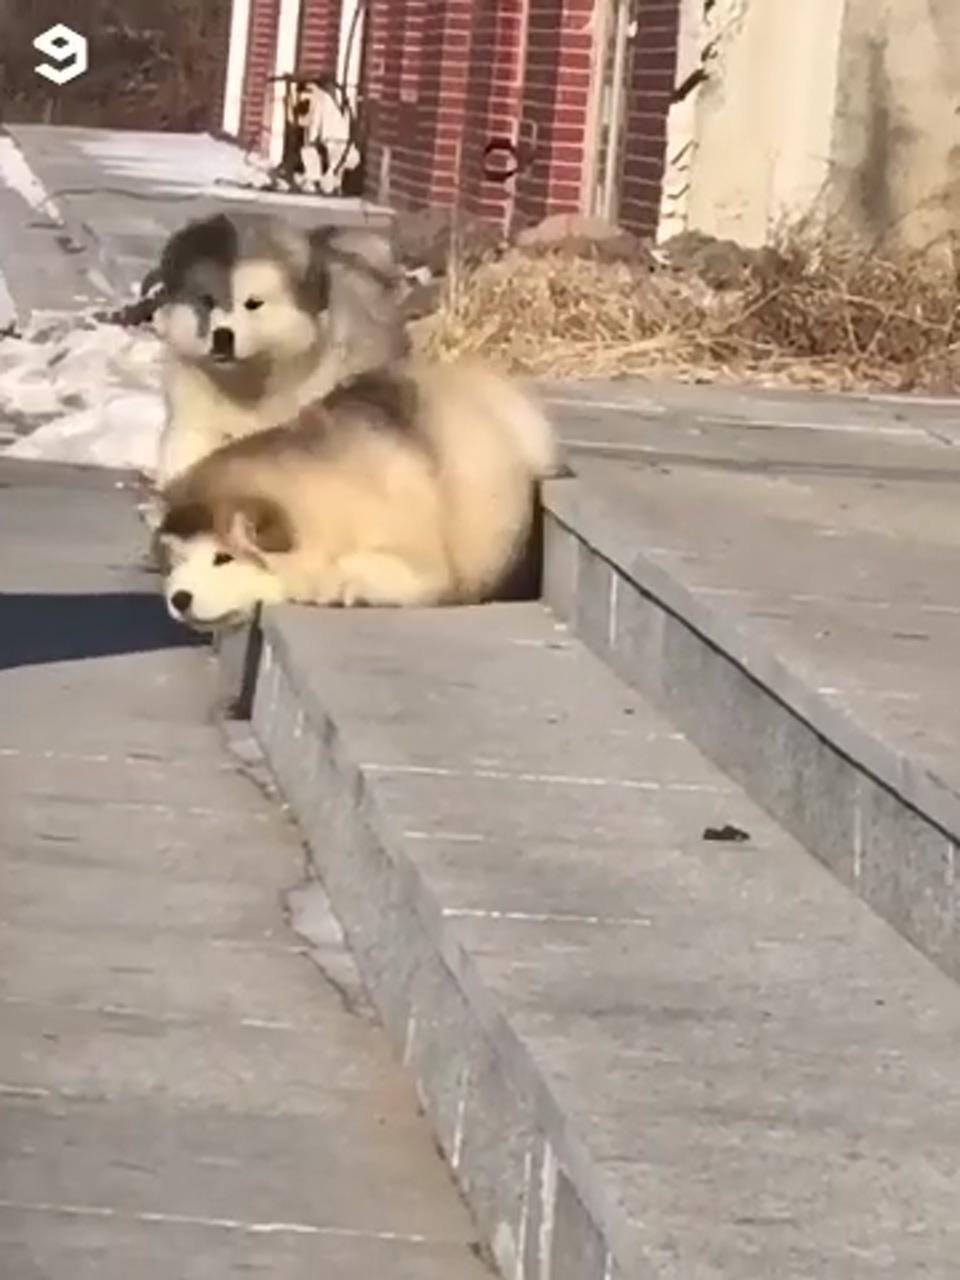 Fluffy; cute fluffy dogs